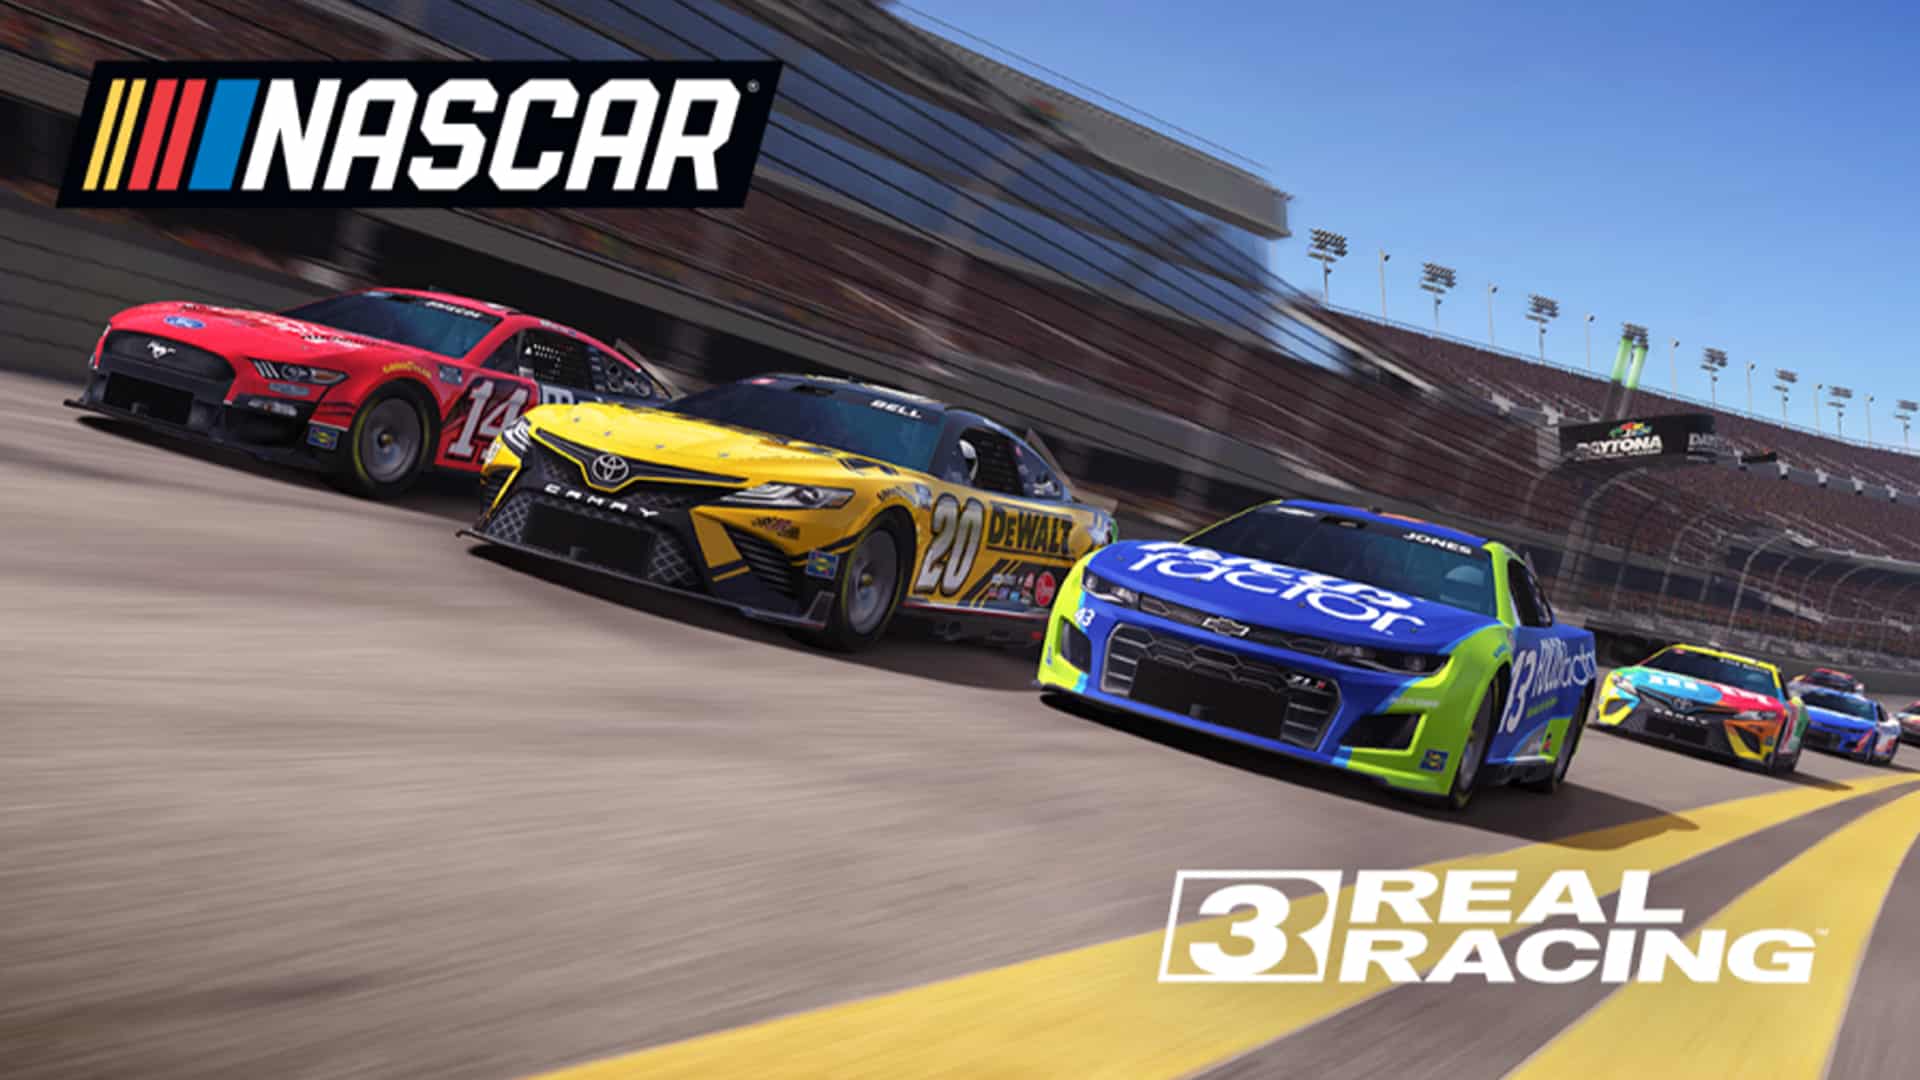 The 2022 NASCAR season comes to Real Racing 3